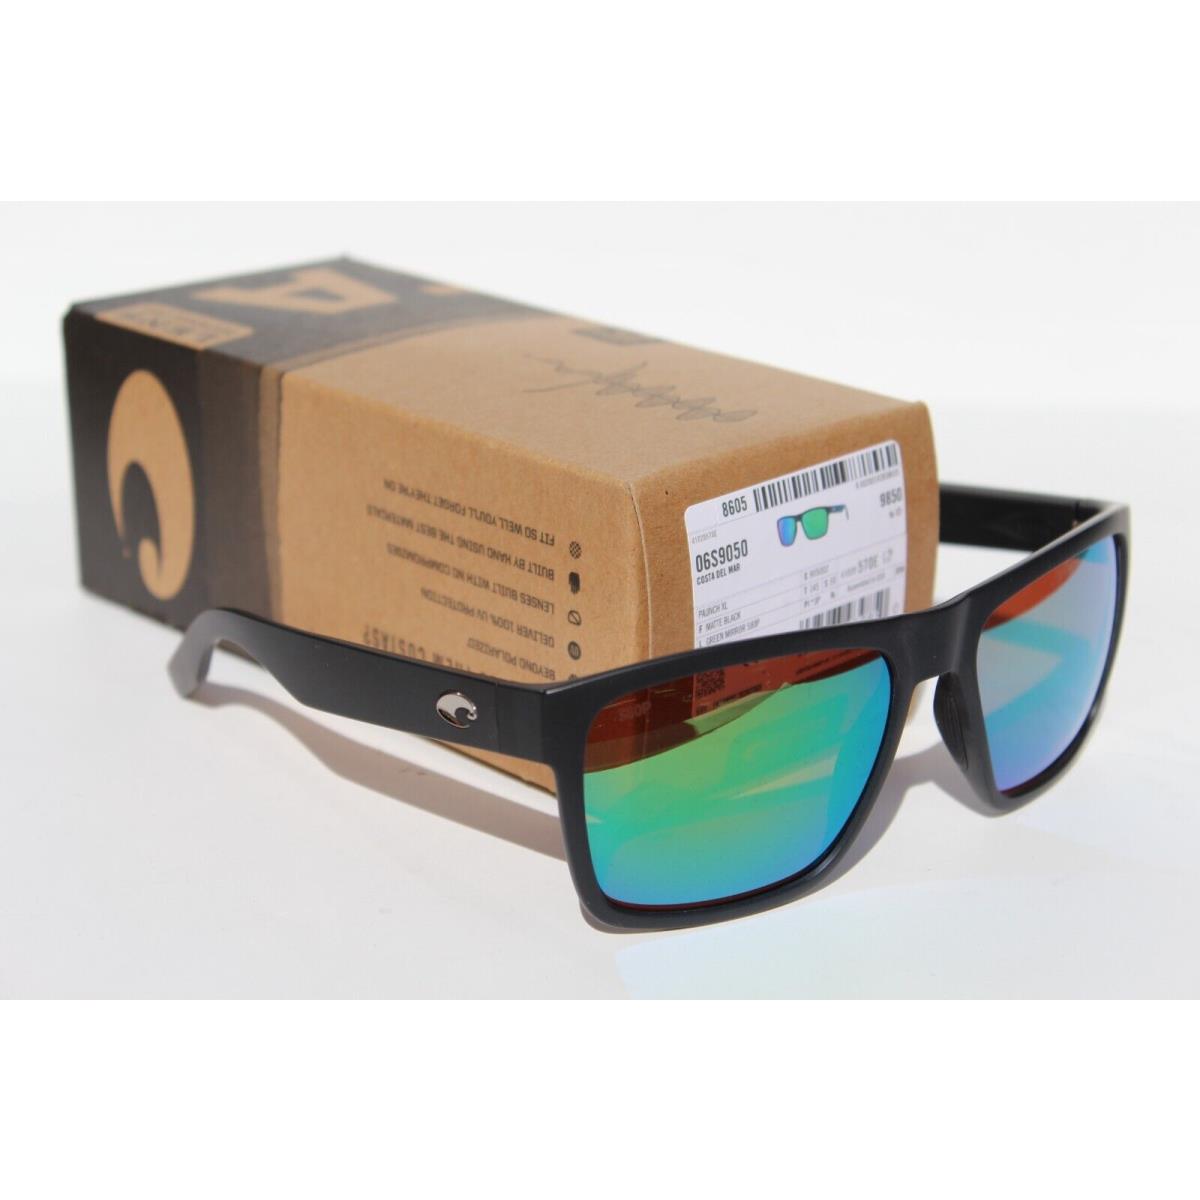 Costa Del Mar sunglasses  - Black Frame, Green Lens